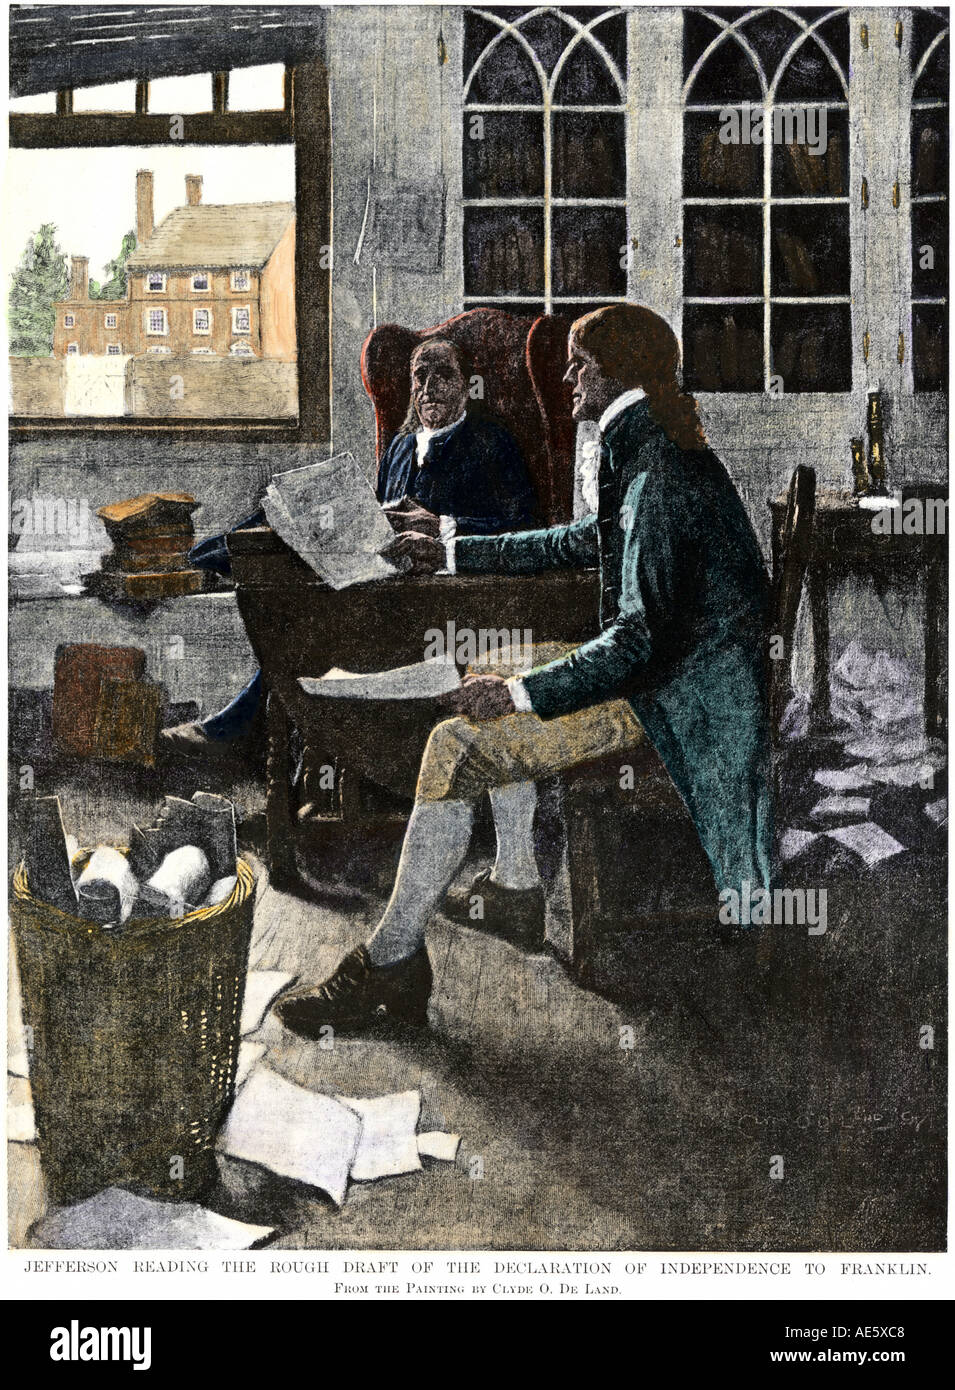 Thomas Jefferson Lesung seinen Entwurf für die Erklärung der Unabhängigkeit zu Benjamin Franklin 1776. Handcolorierte halftone einer Abbildung Stockfoto